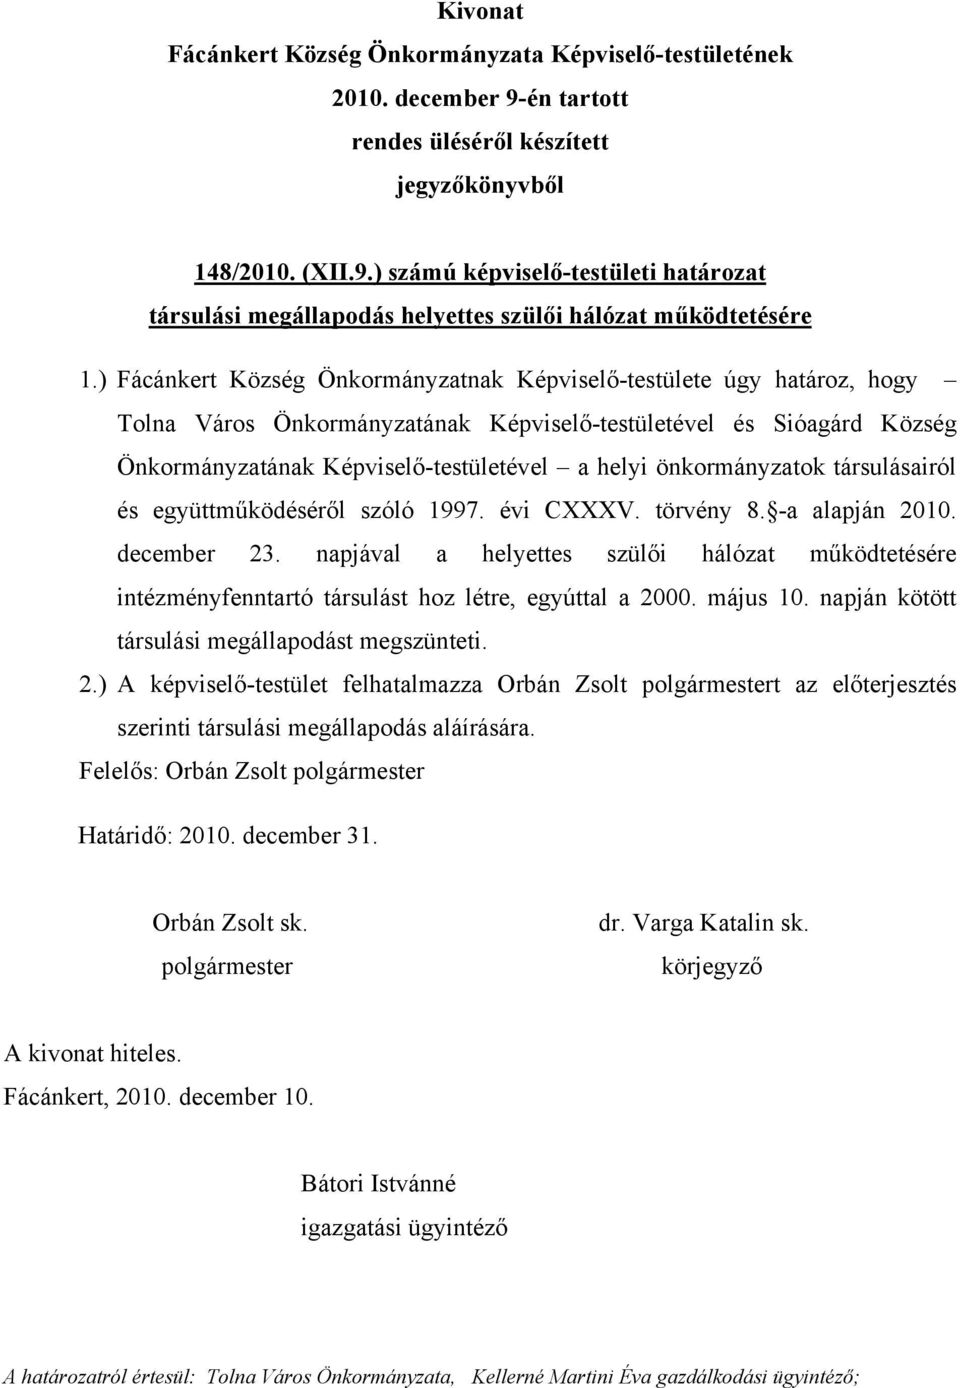 önkormányzatok társulásairól és együttműködéséről szóló 1997. évi CXXXV. törvény 8. -a alapján 2010. december 23.